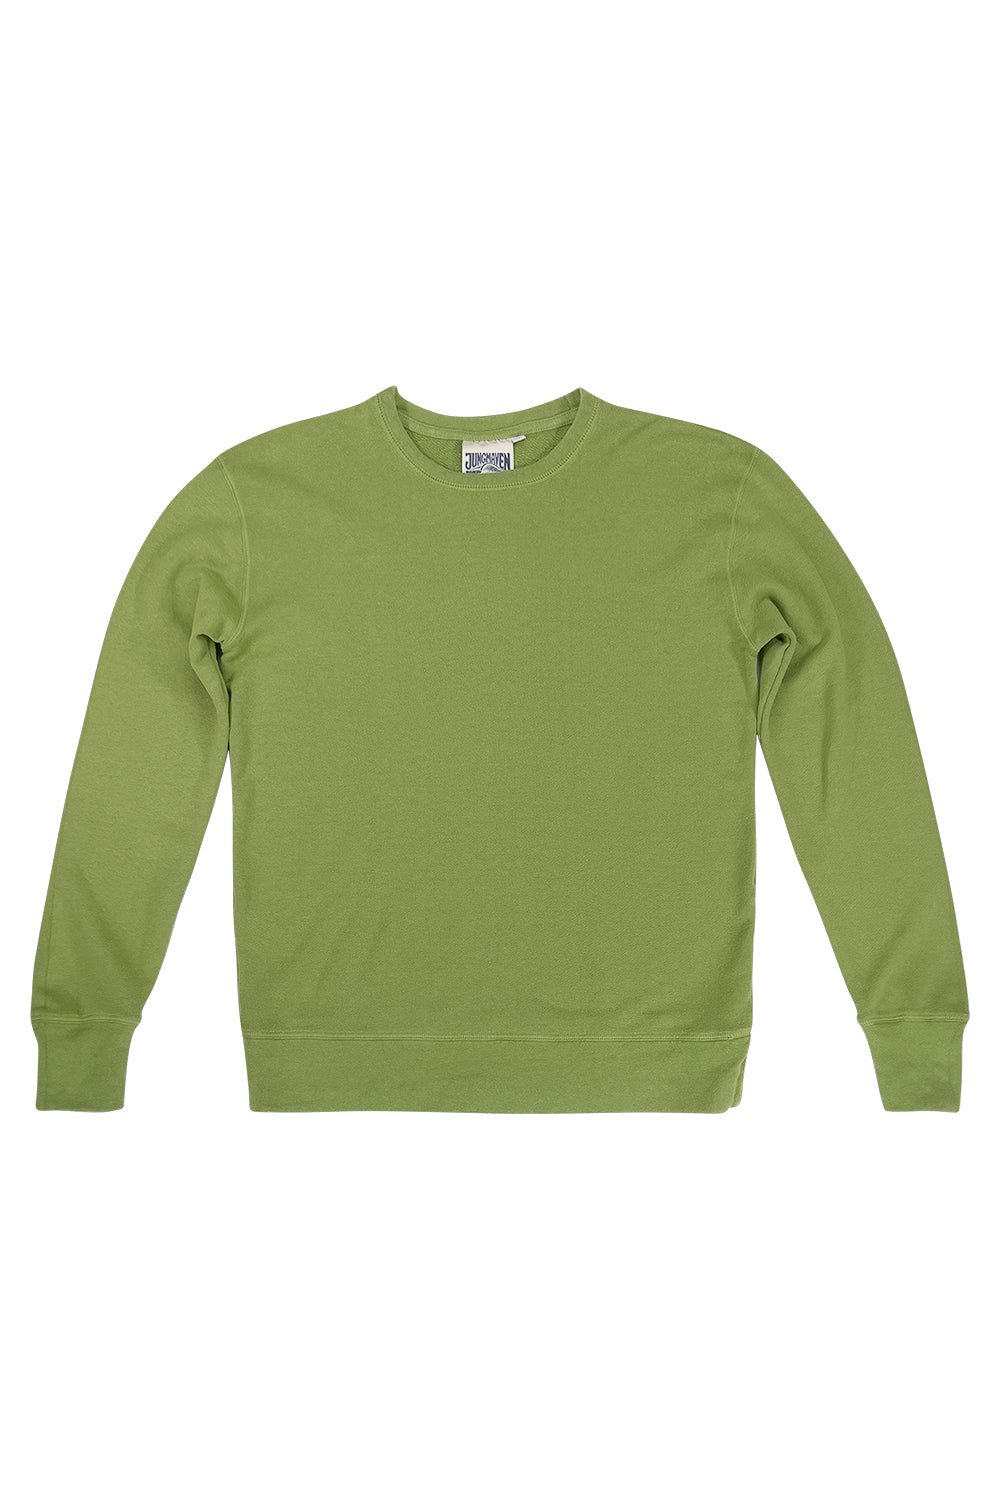 Tahoe Sweatshirt | Jungmaven Hemp Clothing & Accessories / Color: Dark Matcha